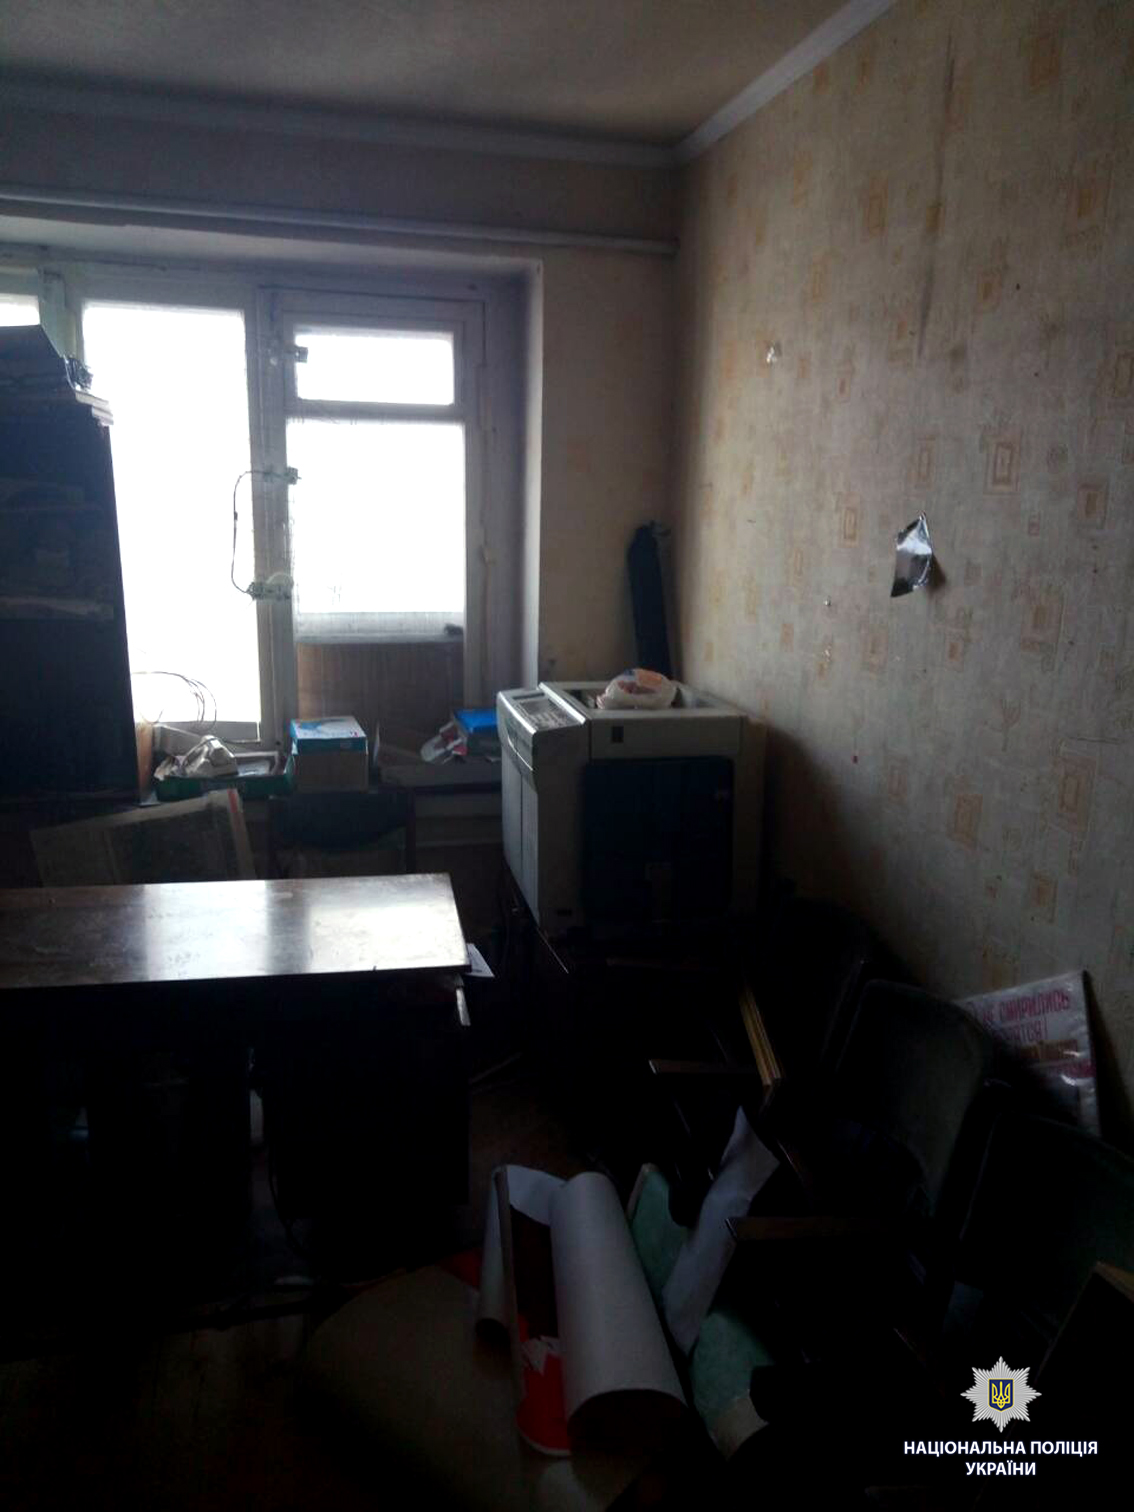 В Харькове неизвестные напали на офис пророссийской организации